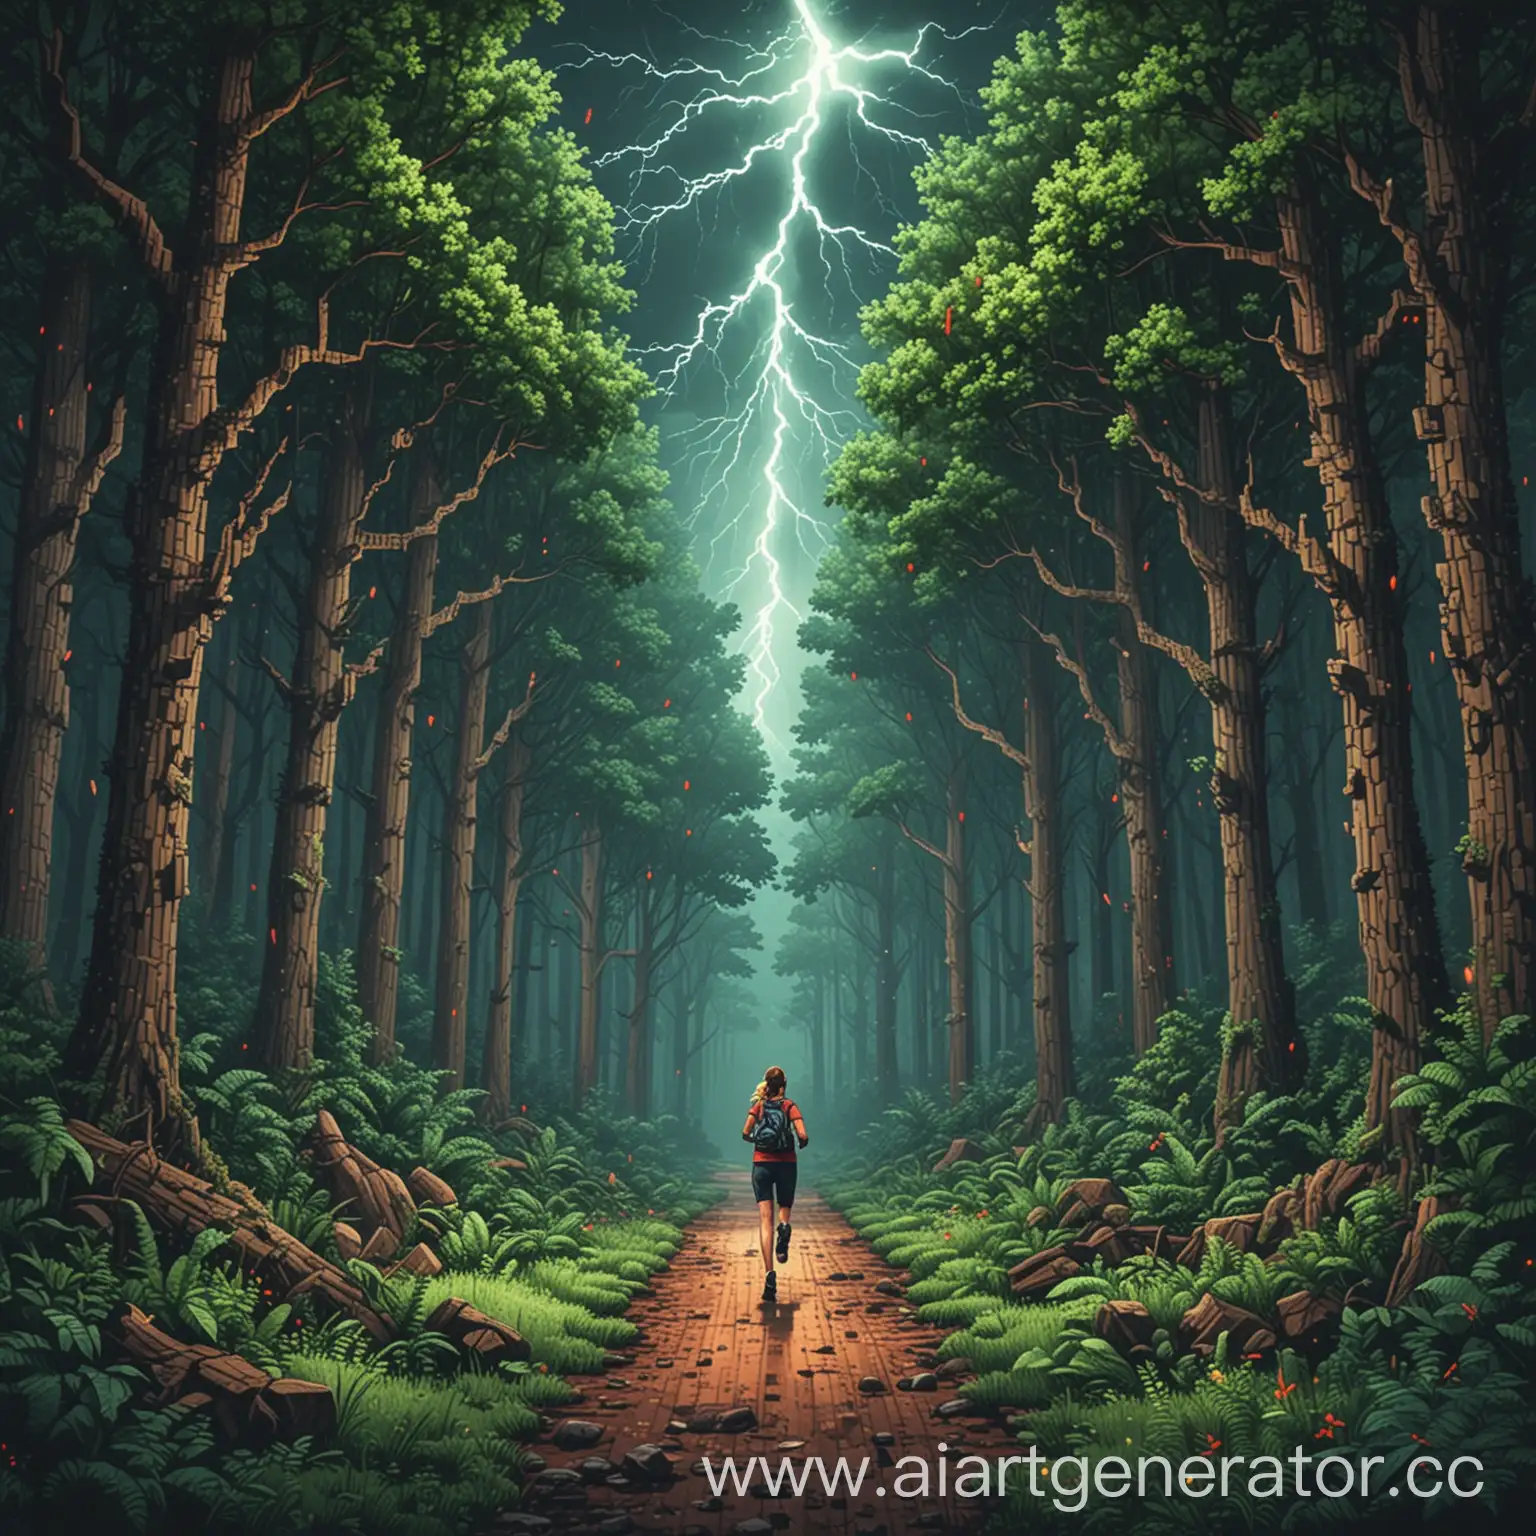 создай облоку в стиле pixel art с разрешением 1500x1500 px . Хештеги для обложки: forest, running, thunder, love